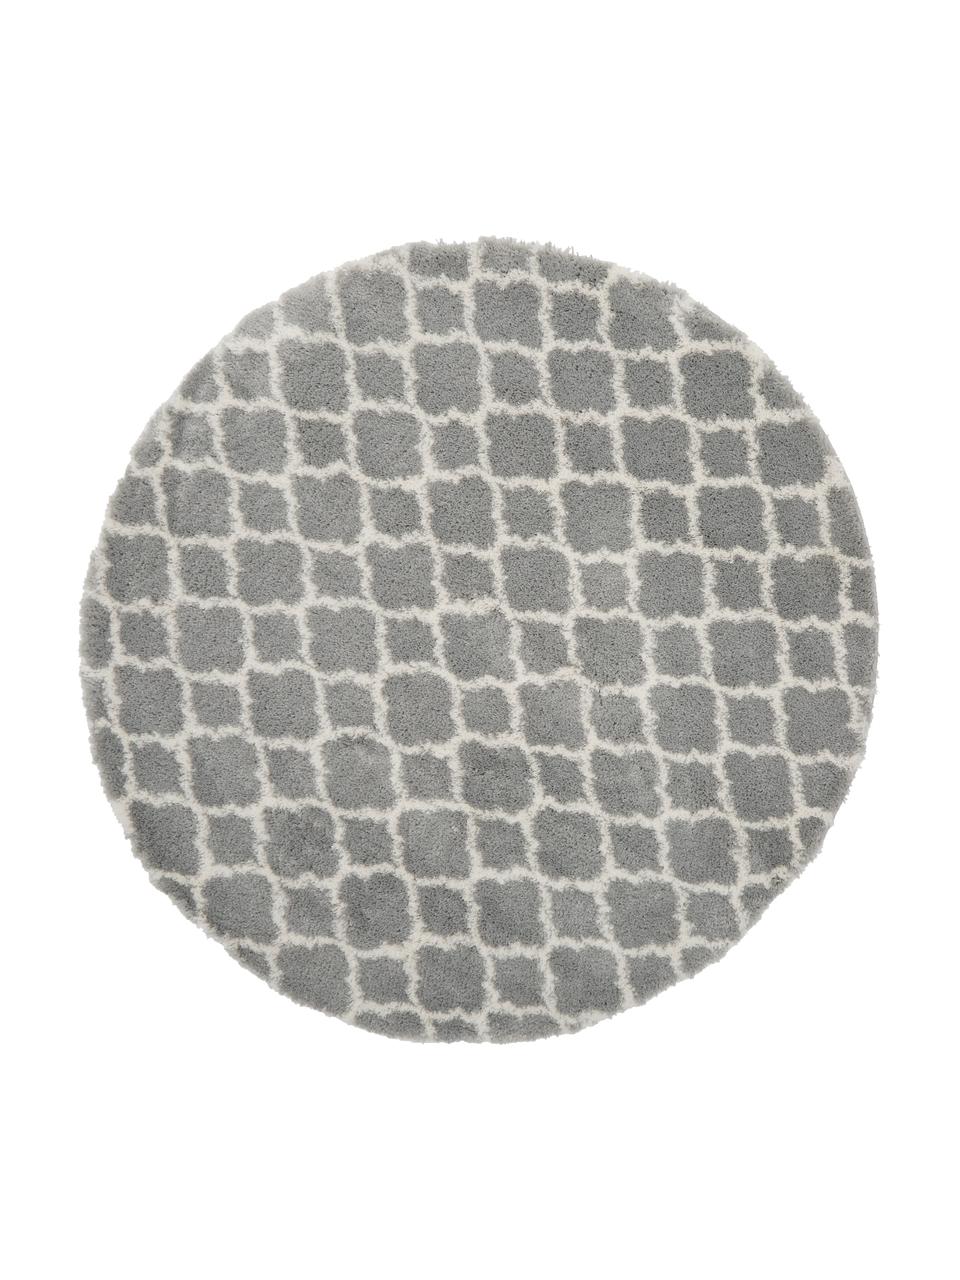 Runder Hochflor-Teppich Mona in Grau/Creme, Flor: 100% Polypropylen, Grau, Cremeweiss, Ø 150 cm (Grösse M)